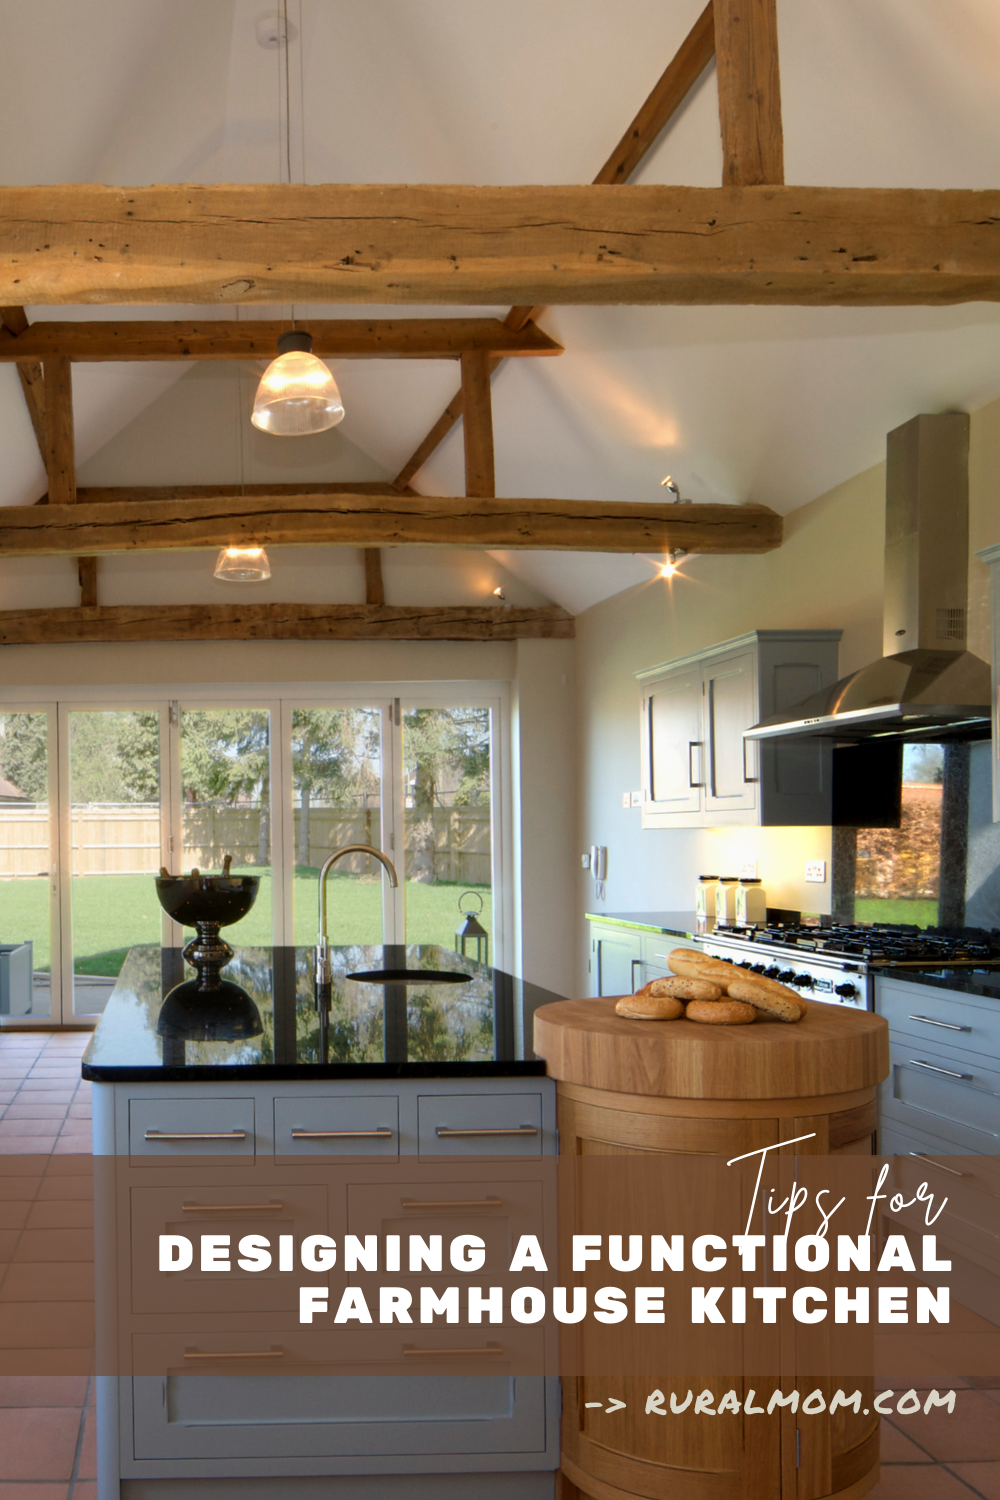 Our Favorite Farmhouse Kitchen Design Ideas & Elements